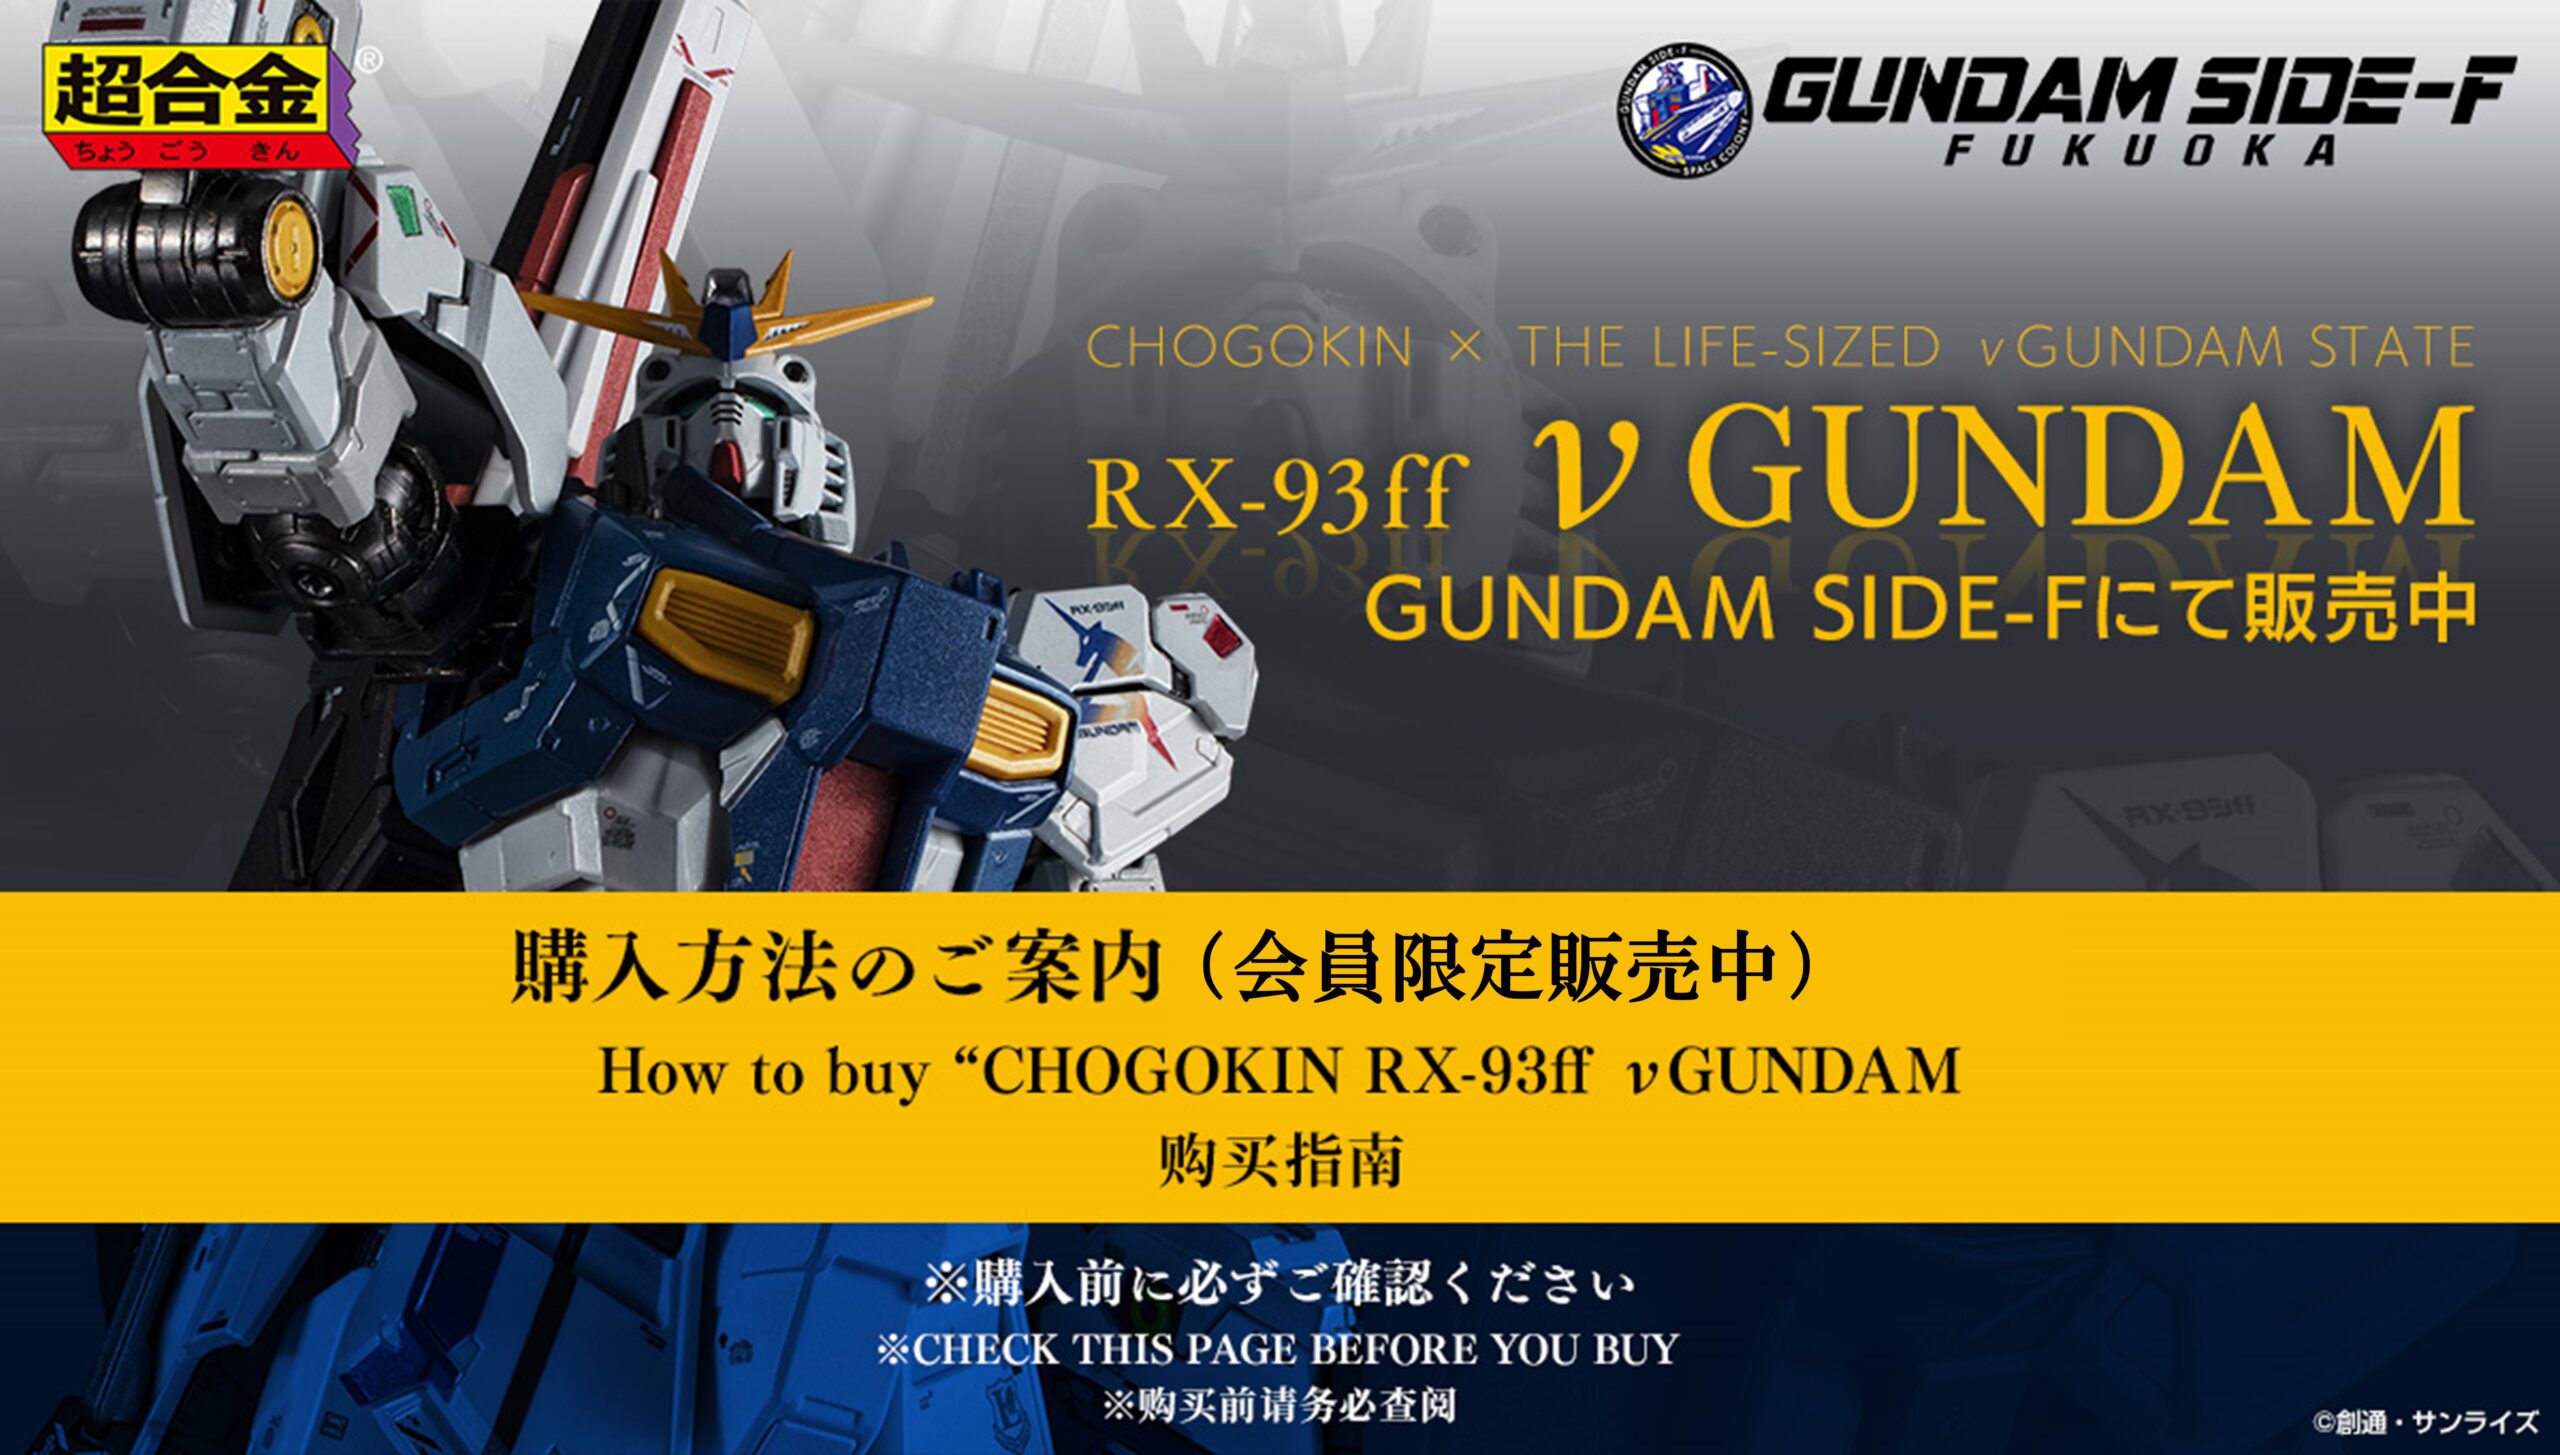 超合金 RX-93ff νガンダム GUNDAM SIDE-F限定